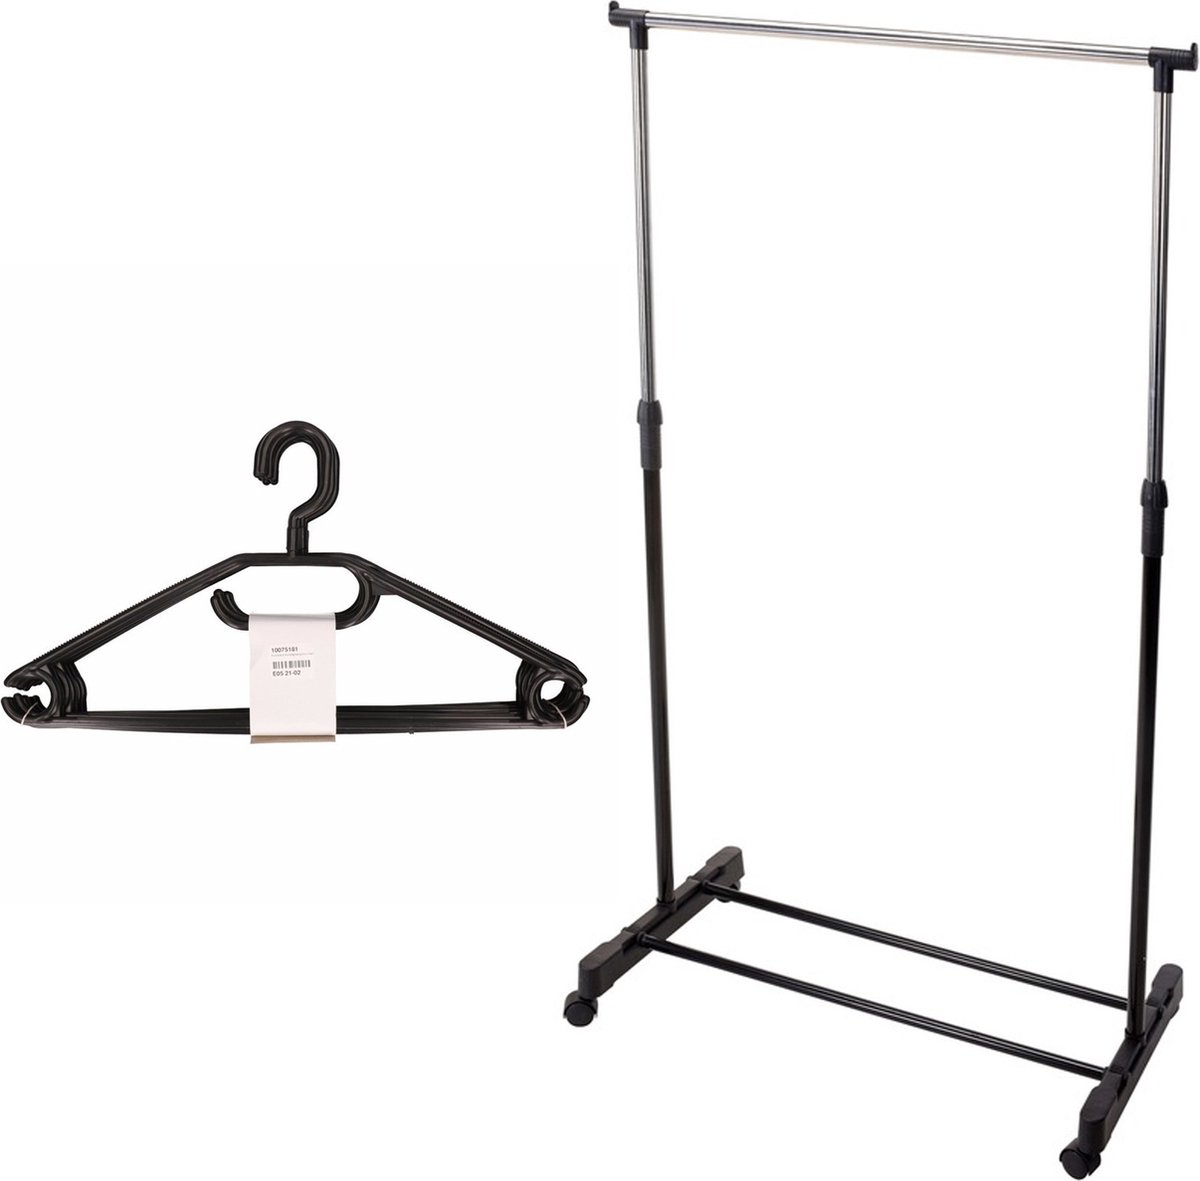 Mobiel kledingrek met kleding hangers - 10 kunststof hangers - zwart